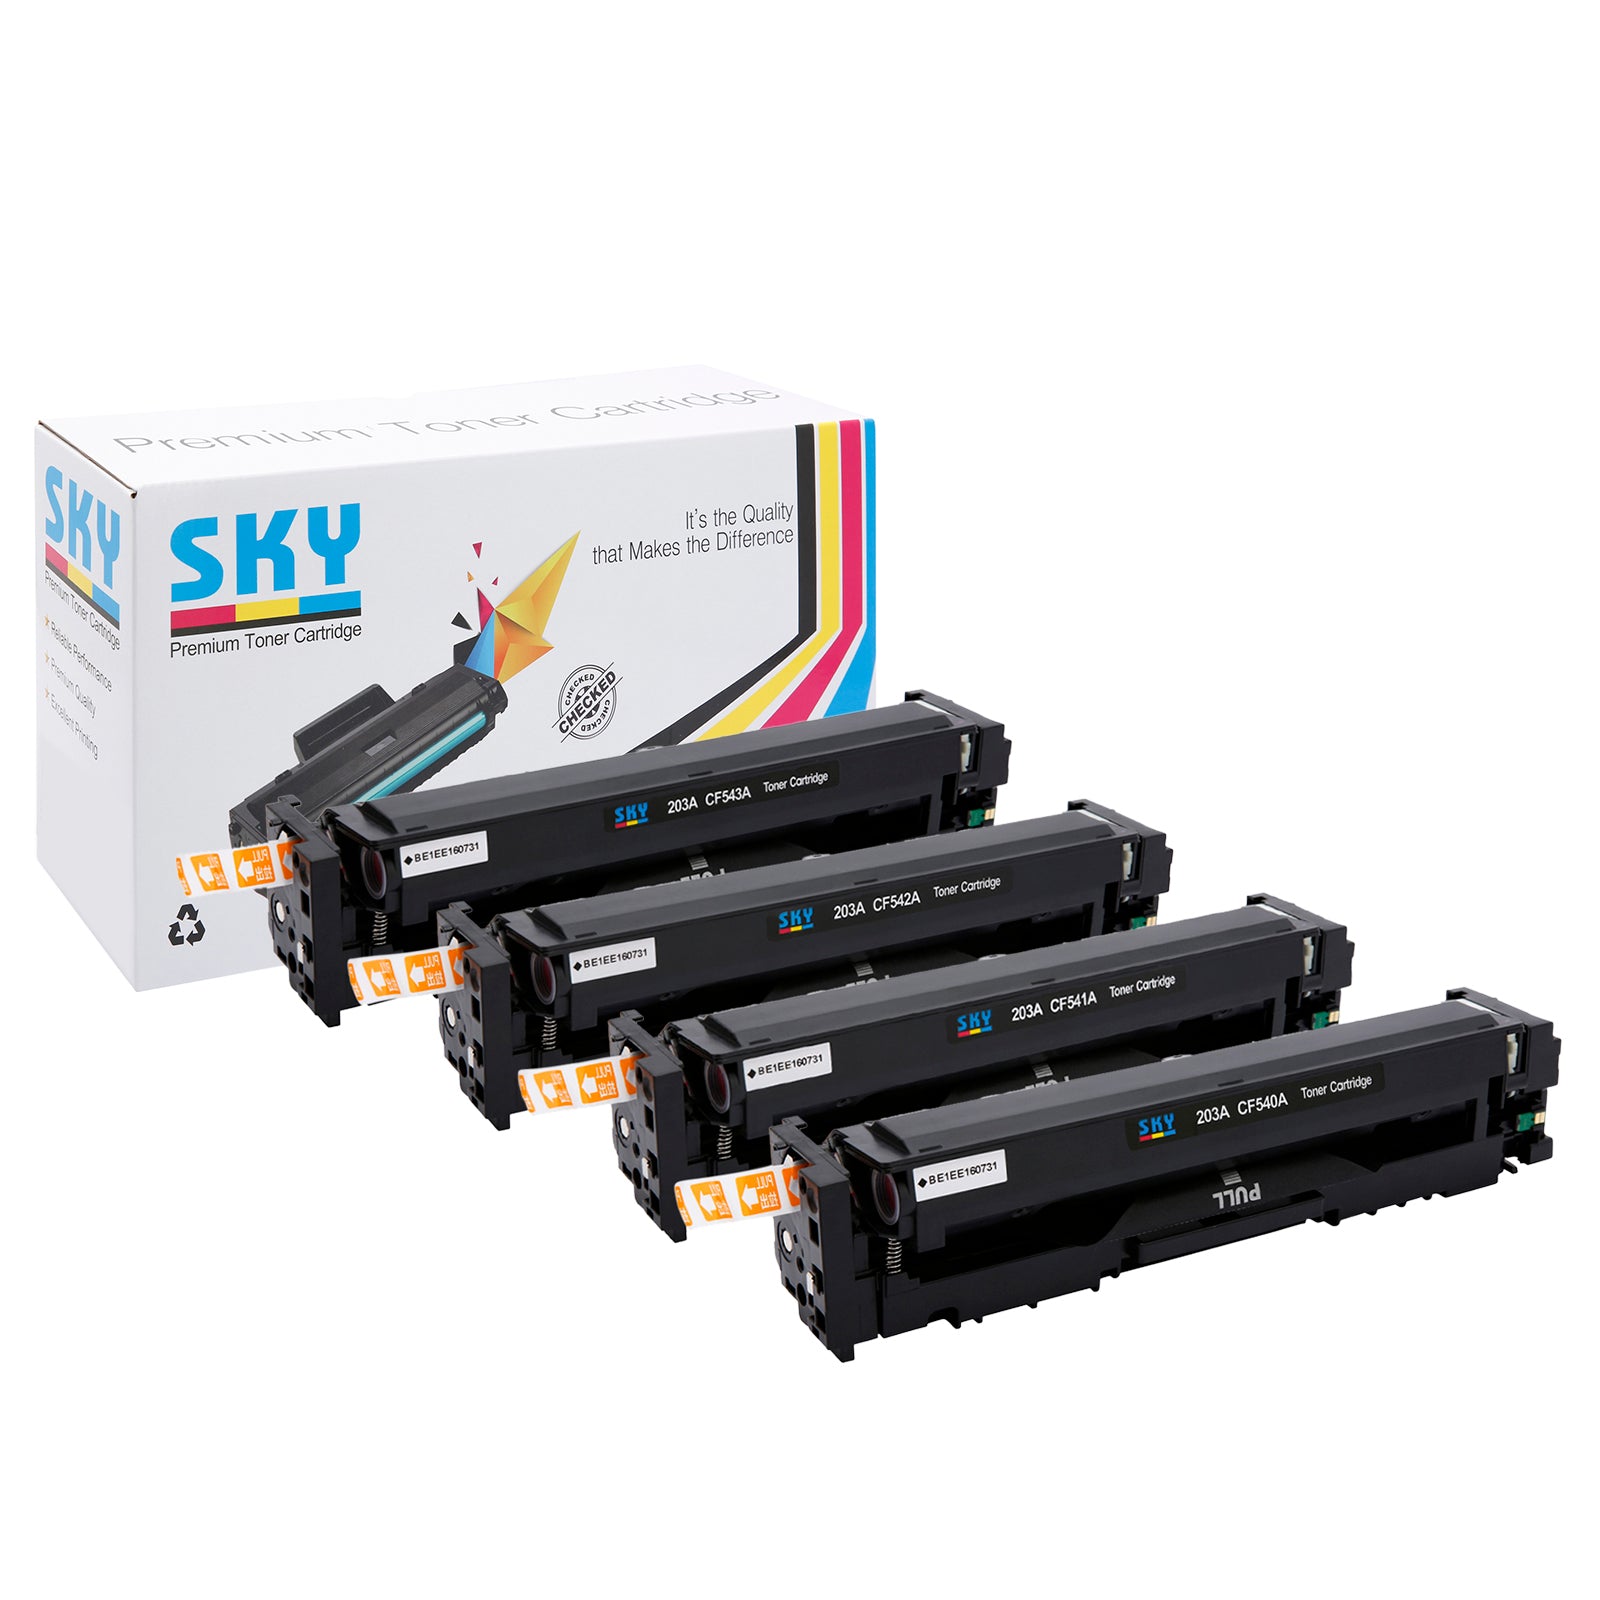 SKY 203A Compatible Toner Cartridges for HP Colour LaserJet Pro M254, MFP M280 and M281